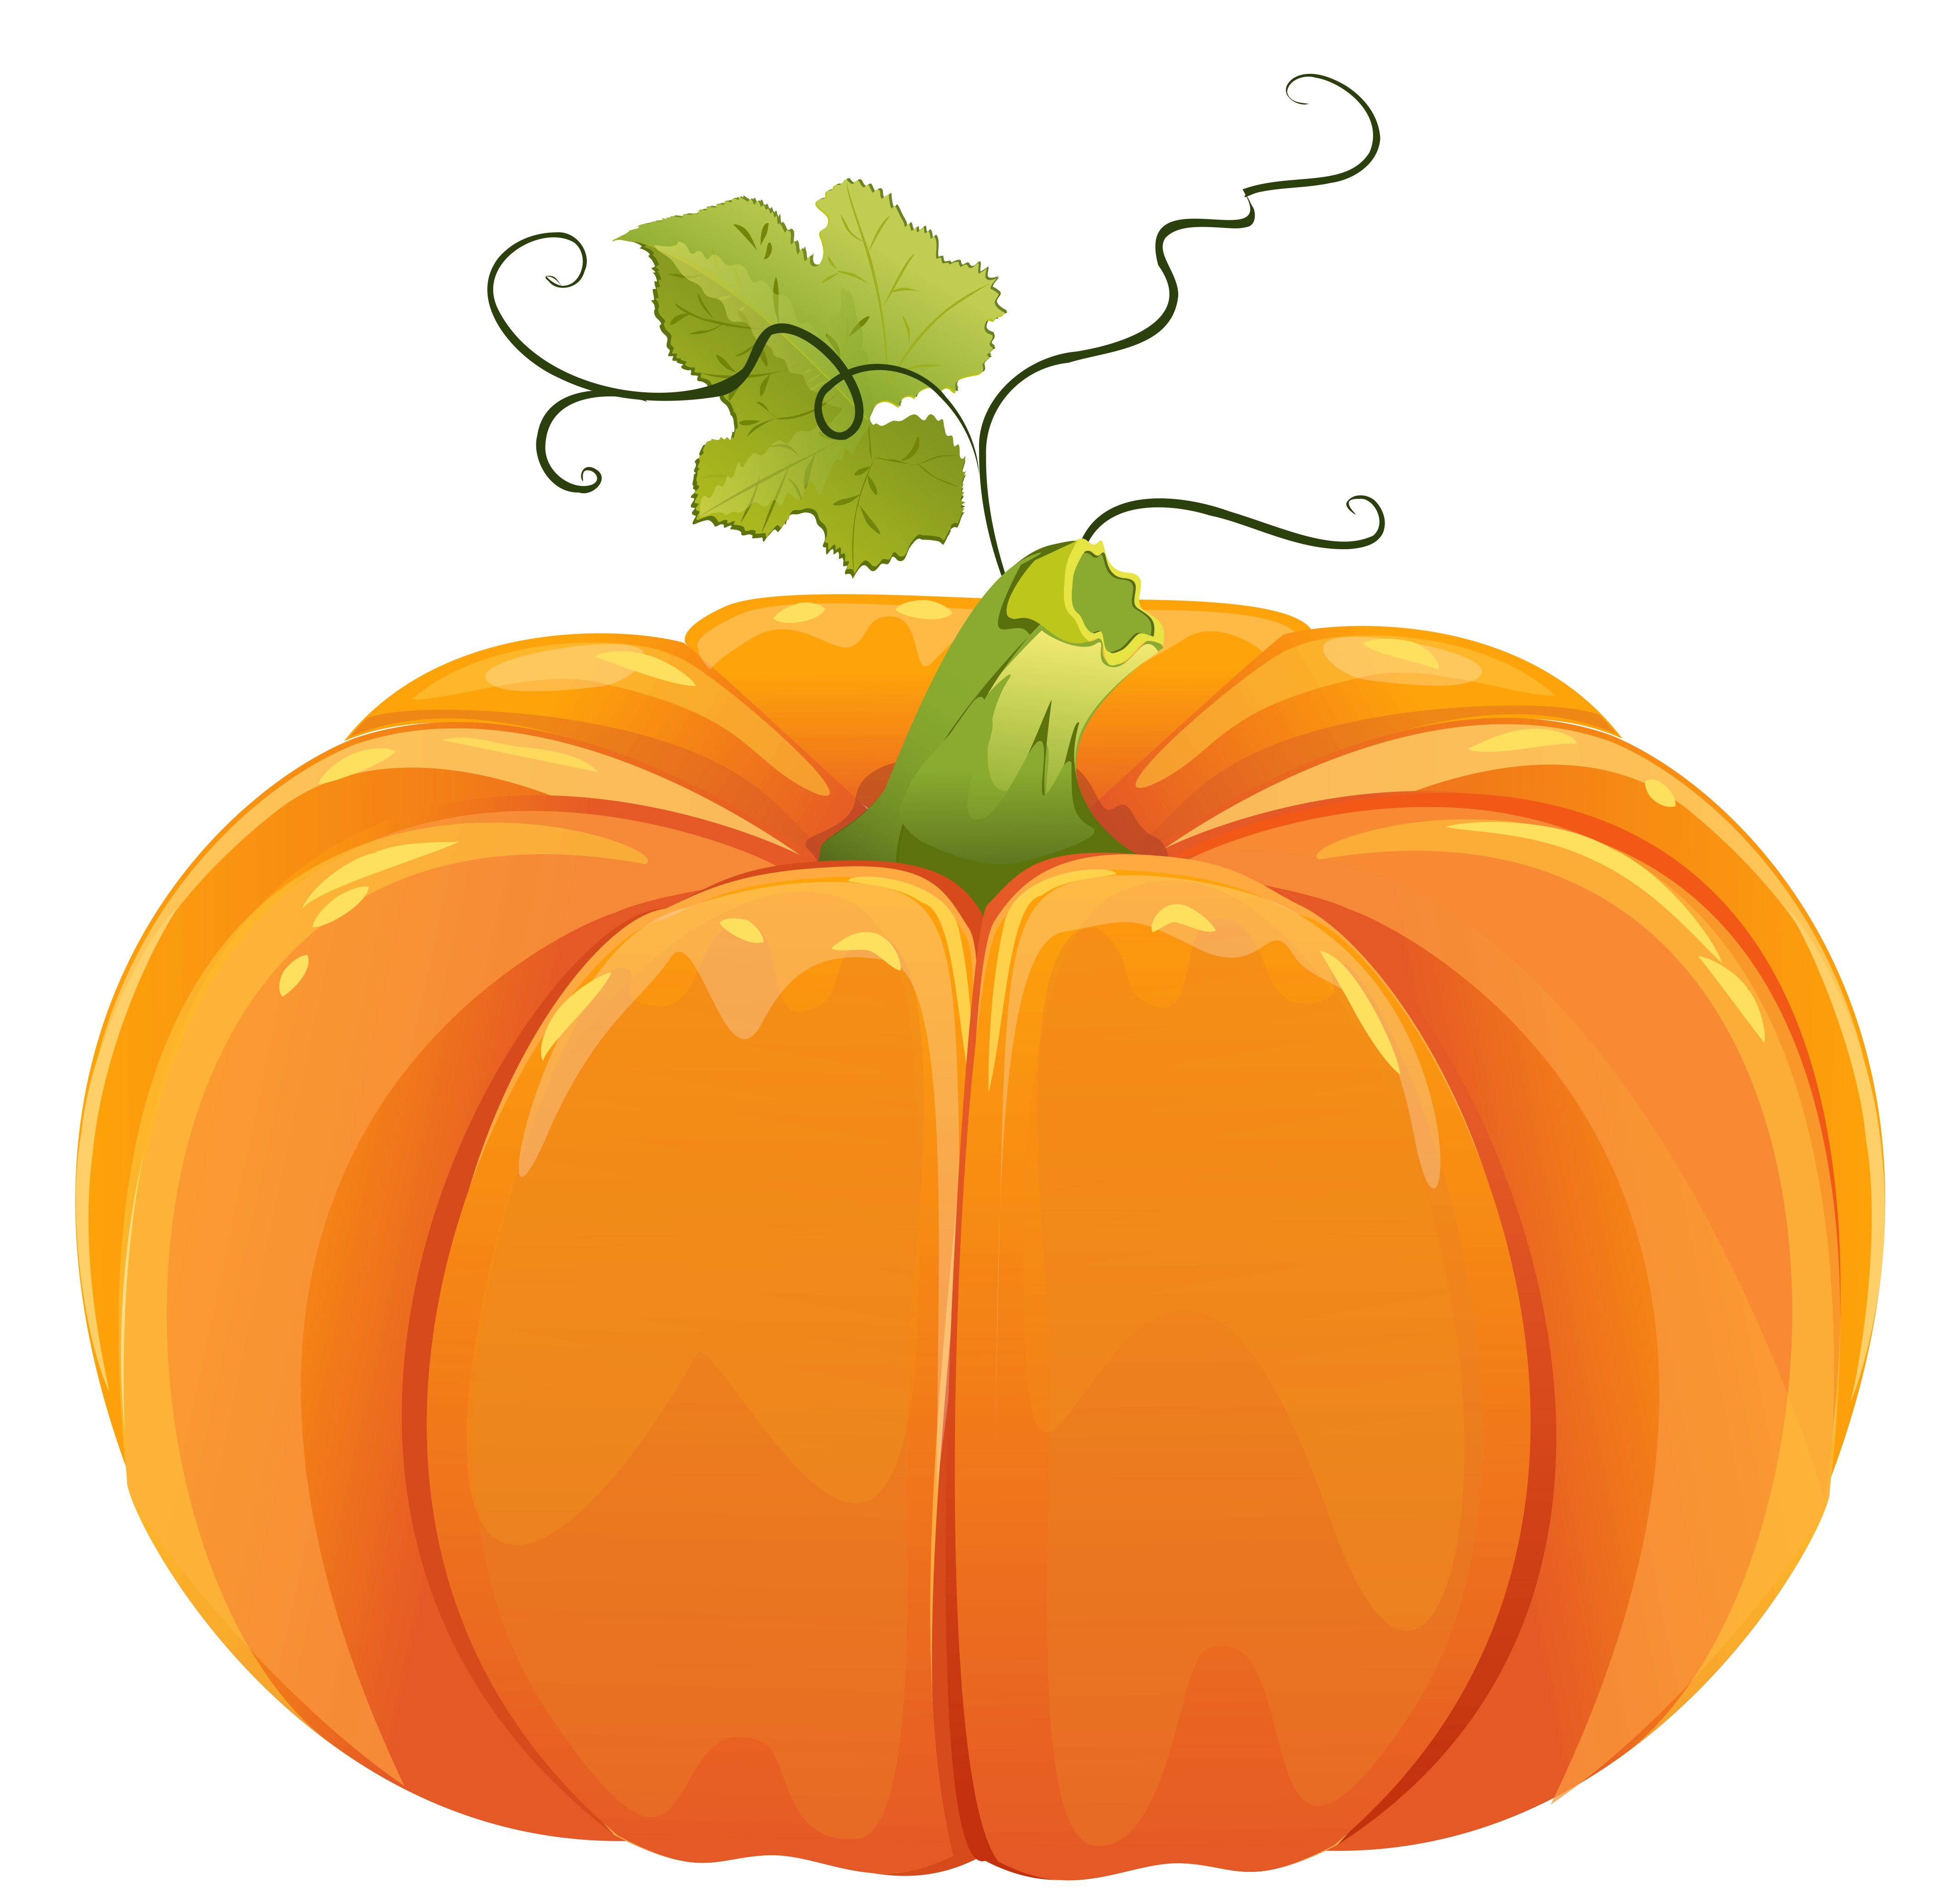 Halloween Pumpkin Clipart .